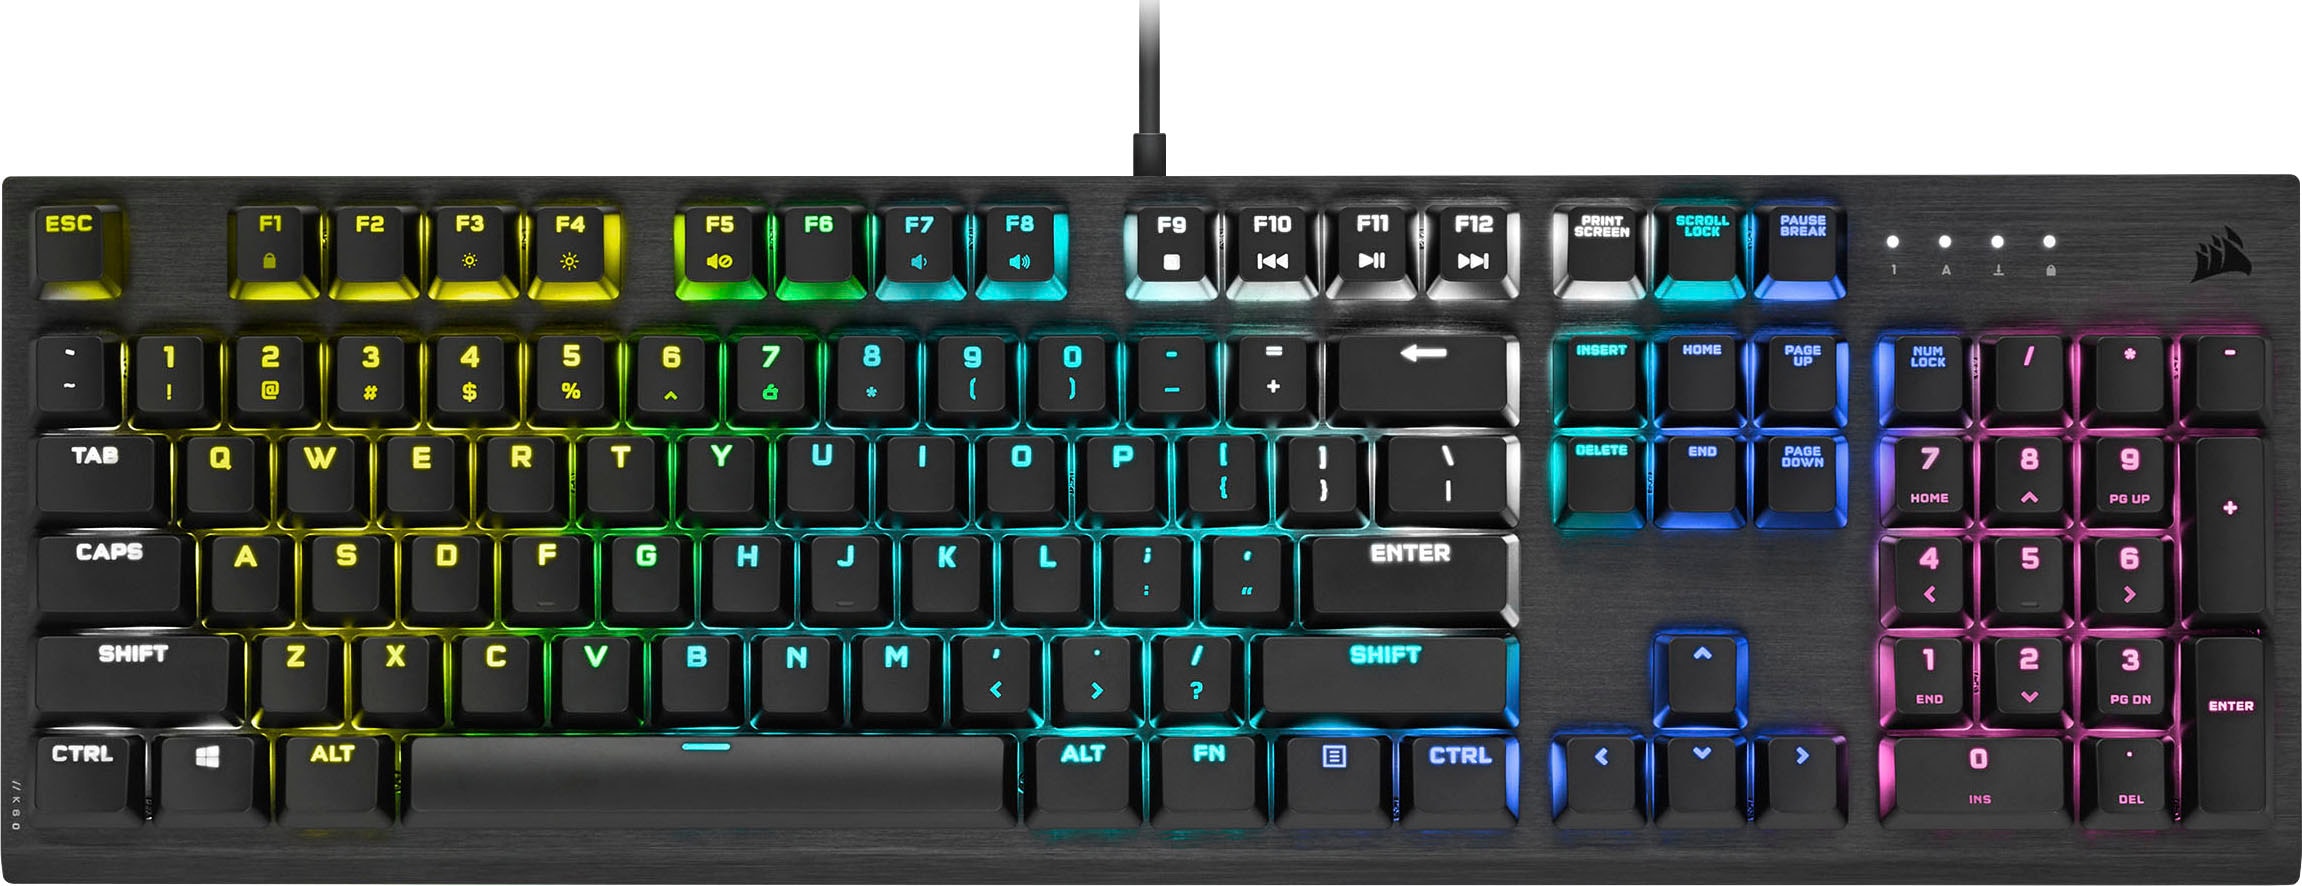 【Neue Version】 Corsair Gaming-Tastatur Füße) »K60 UNIVERSAL Low kaufen RGB | Profile«, PRO (Ziffernblock-ausklappbare online